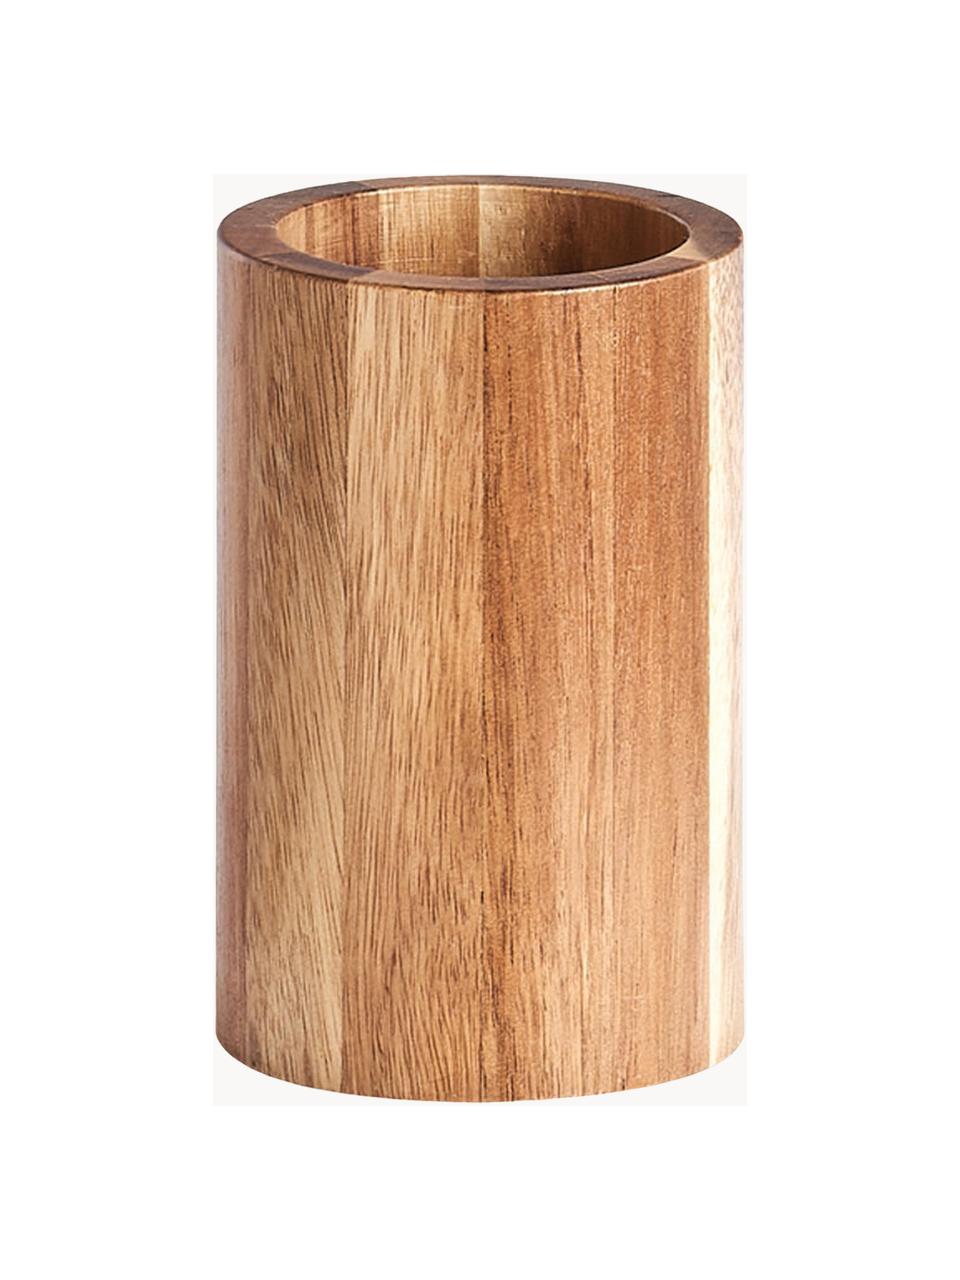 Zahnputzbecher Wood aus Akazienholz, Akazienholz, Akazienholz, Ø 7 x H 11 cm